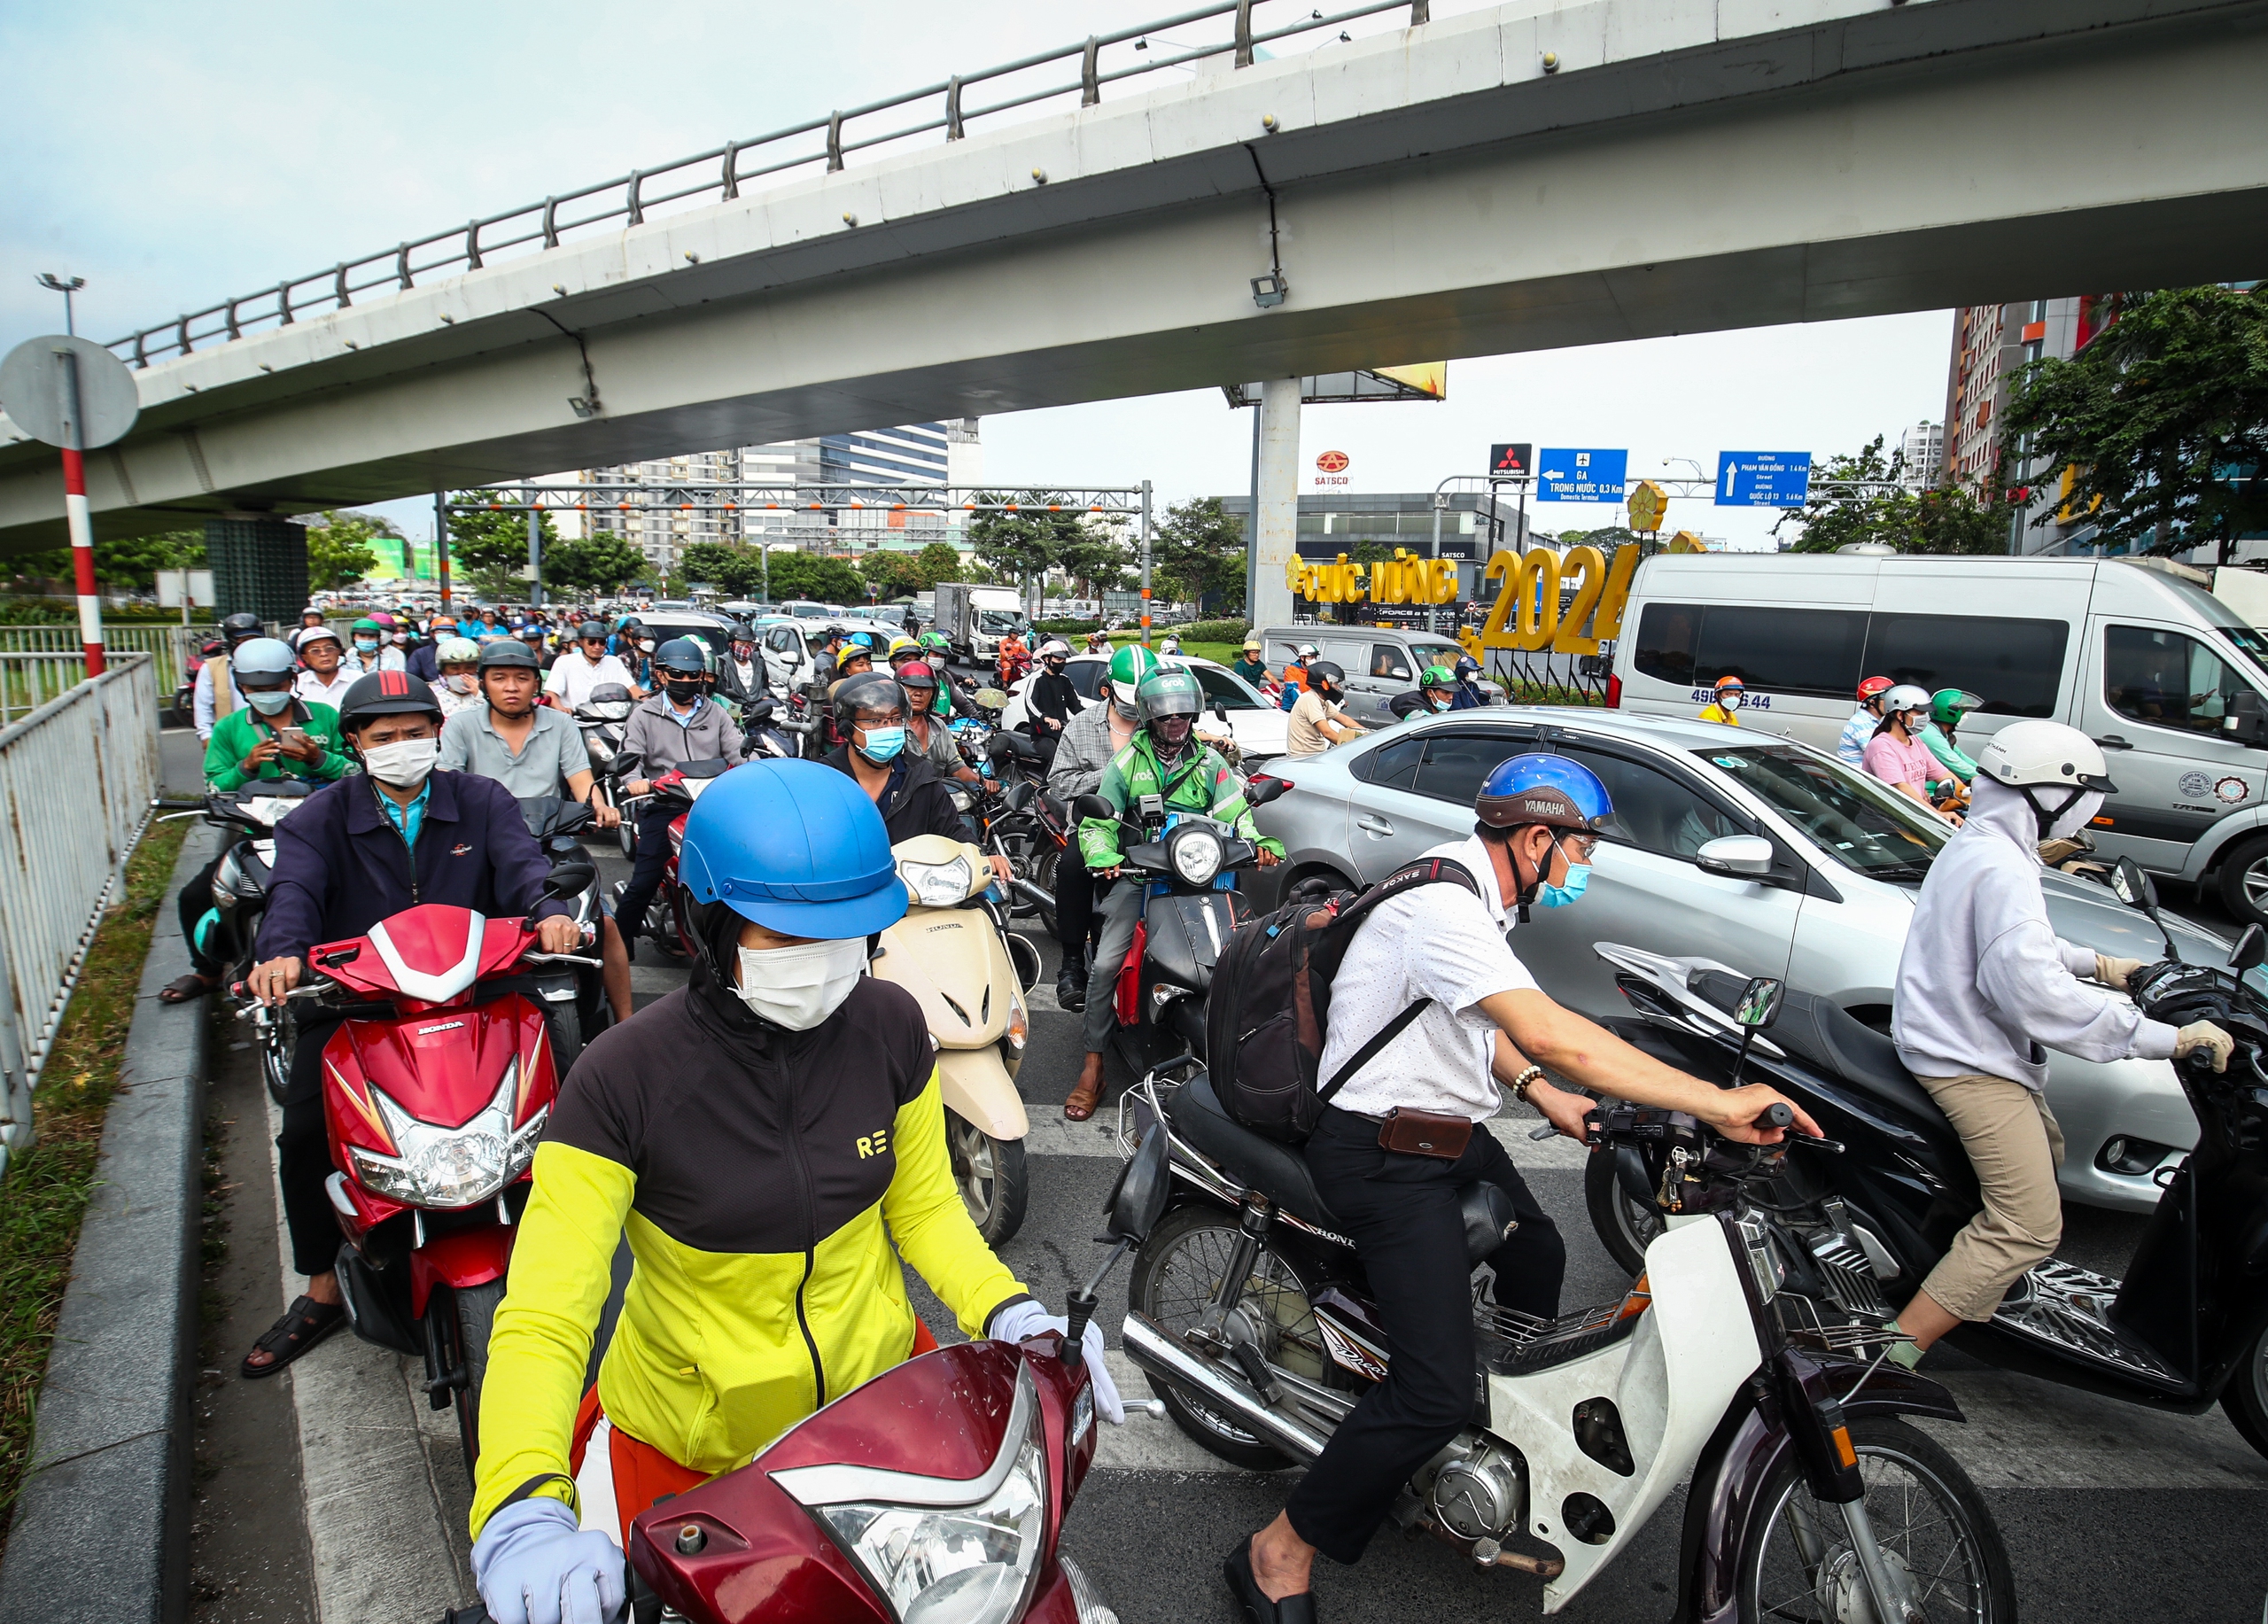 26 tháng chạp: Cửa ngõ sân bay Tân Sơn Nhất đông nghẹt xe cộ, có lúc kẹt cứng- Ảnh 8.